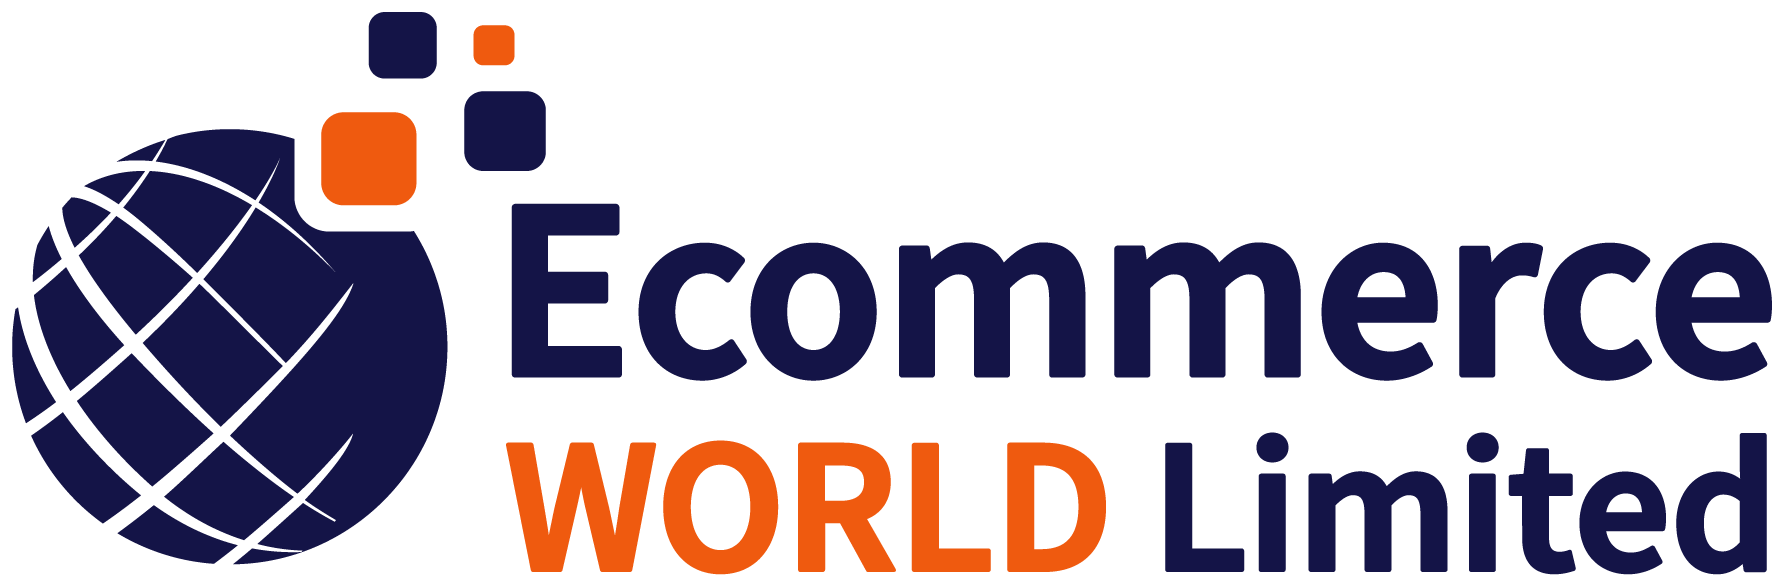 Ecommerce World